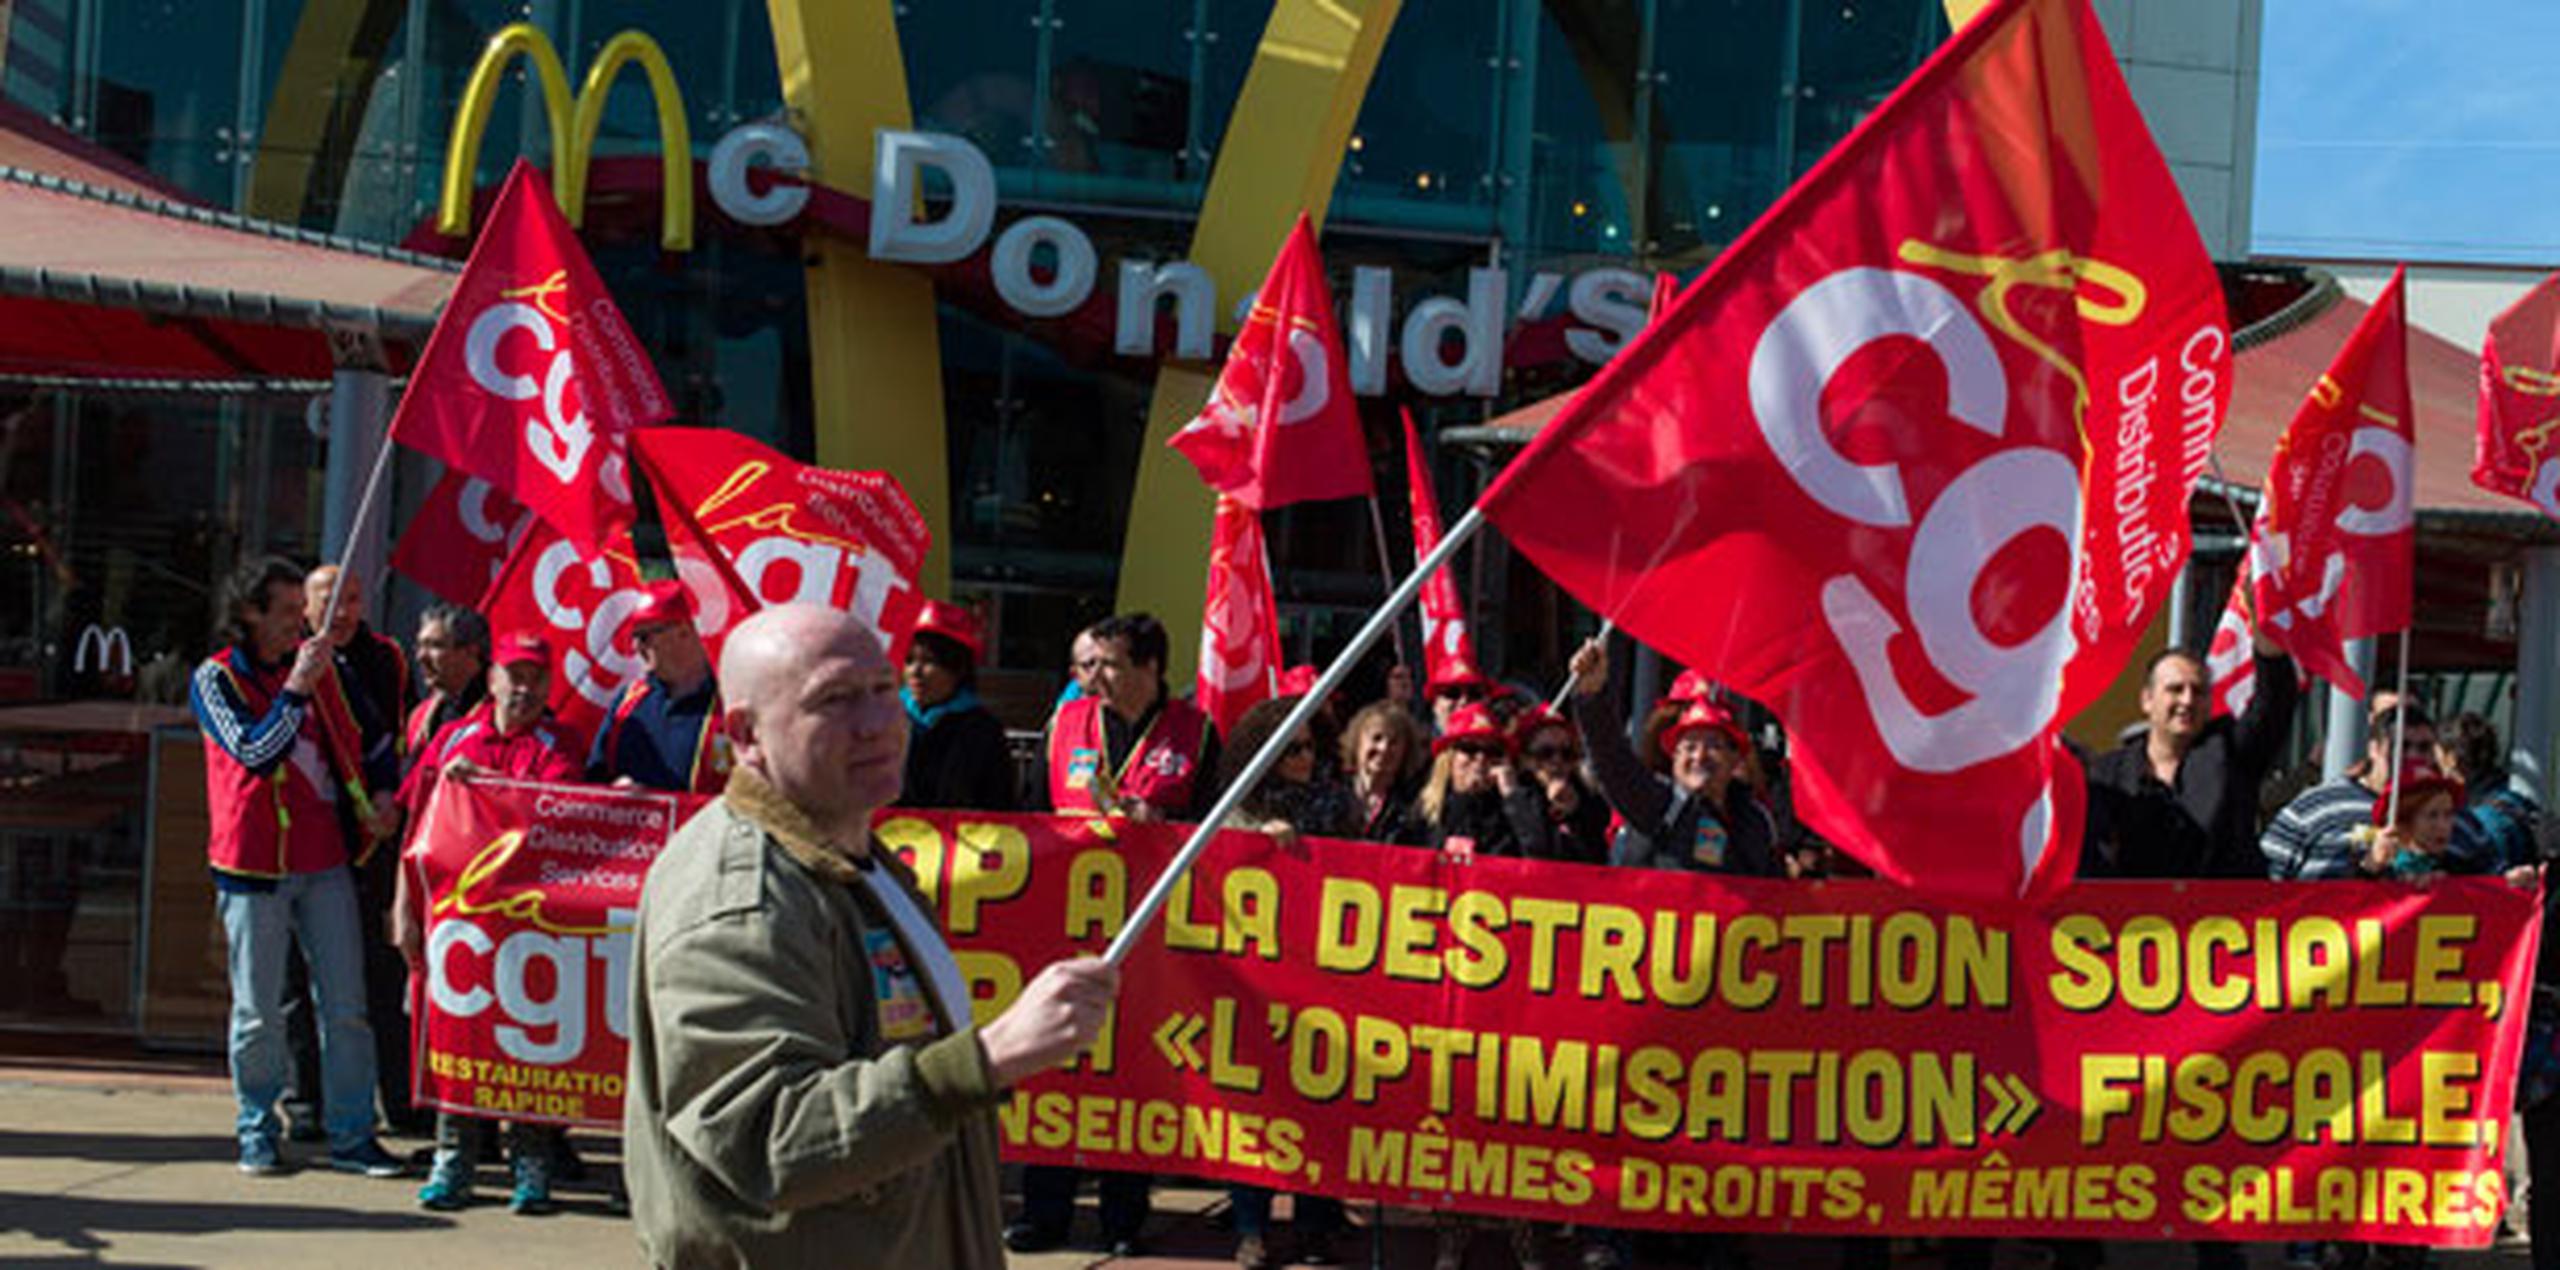 McDonald's Francia dijo en un comunicado que "deplora" la protesta y espera un dialogo pacífico. Añadió que la compañía ha logrado cerca de 100 acuerdos laborales. (AP Photo/Thibault Camus)
